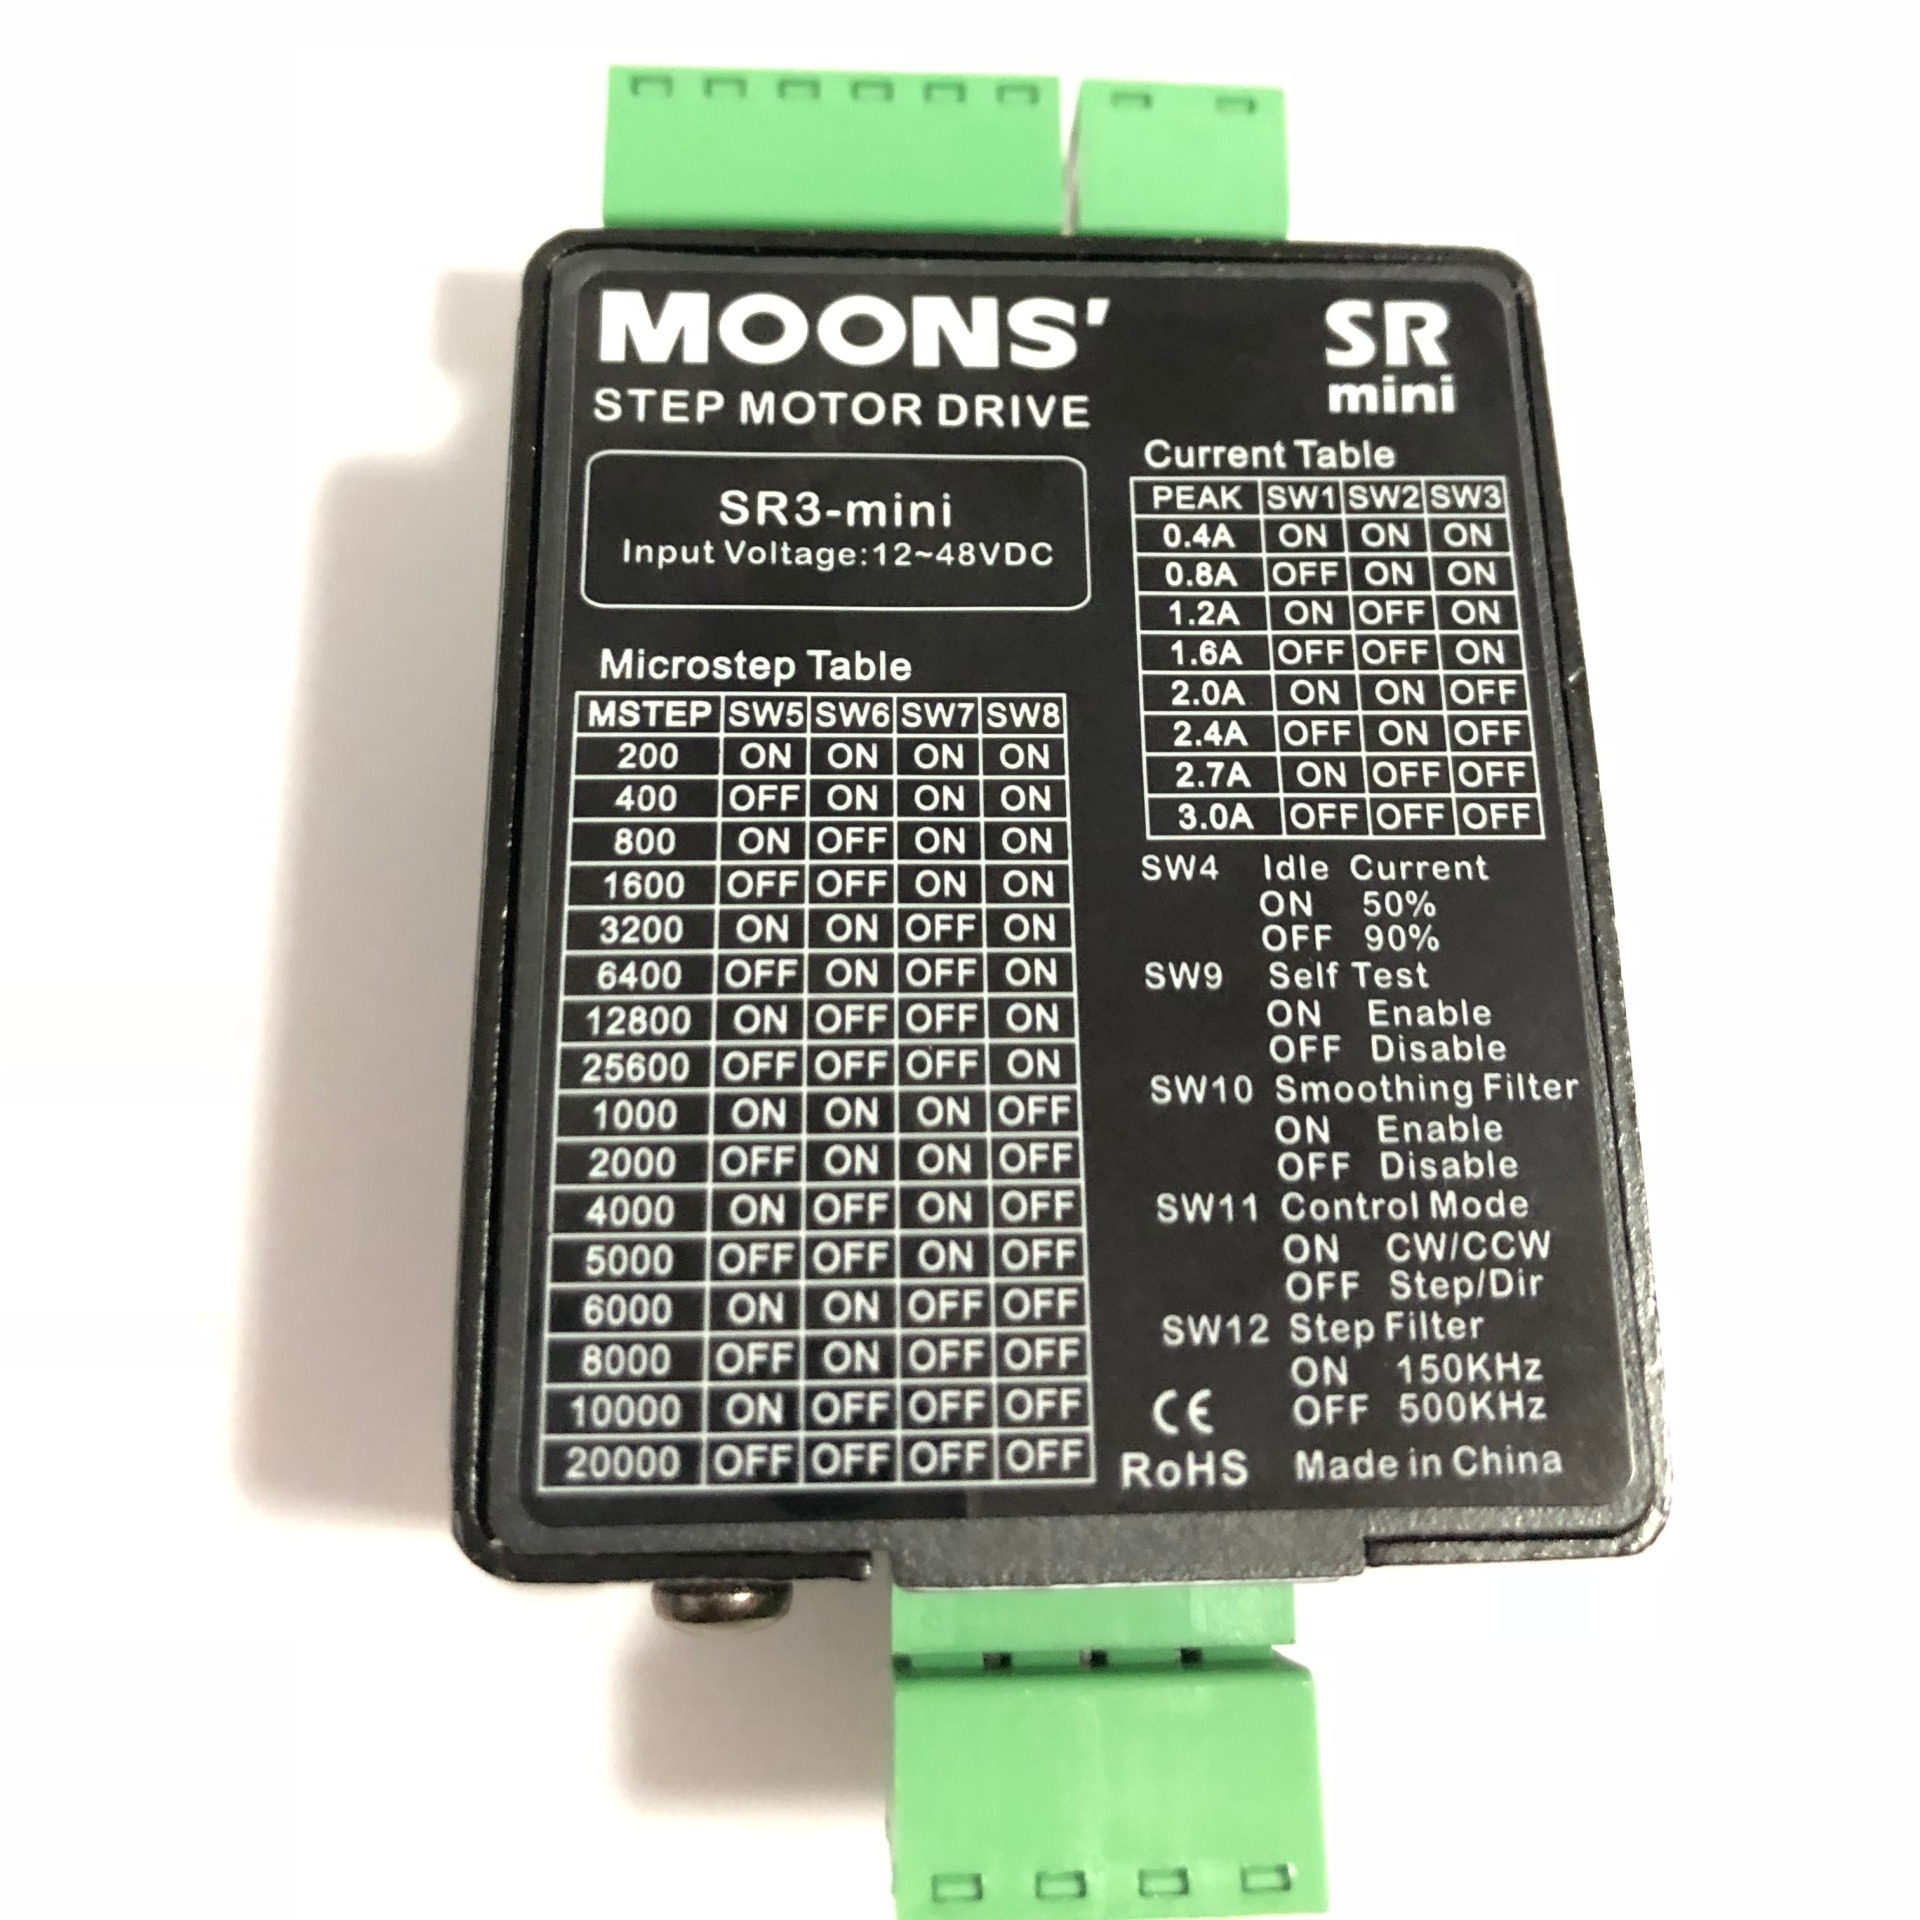 信浓28-42步进电机配套驱动器SR3 mini轻巧体积小迷你型moon